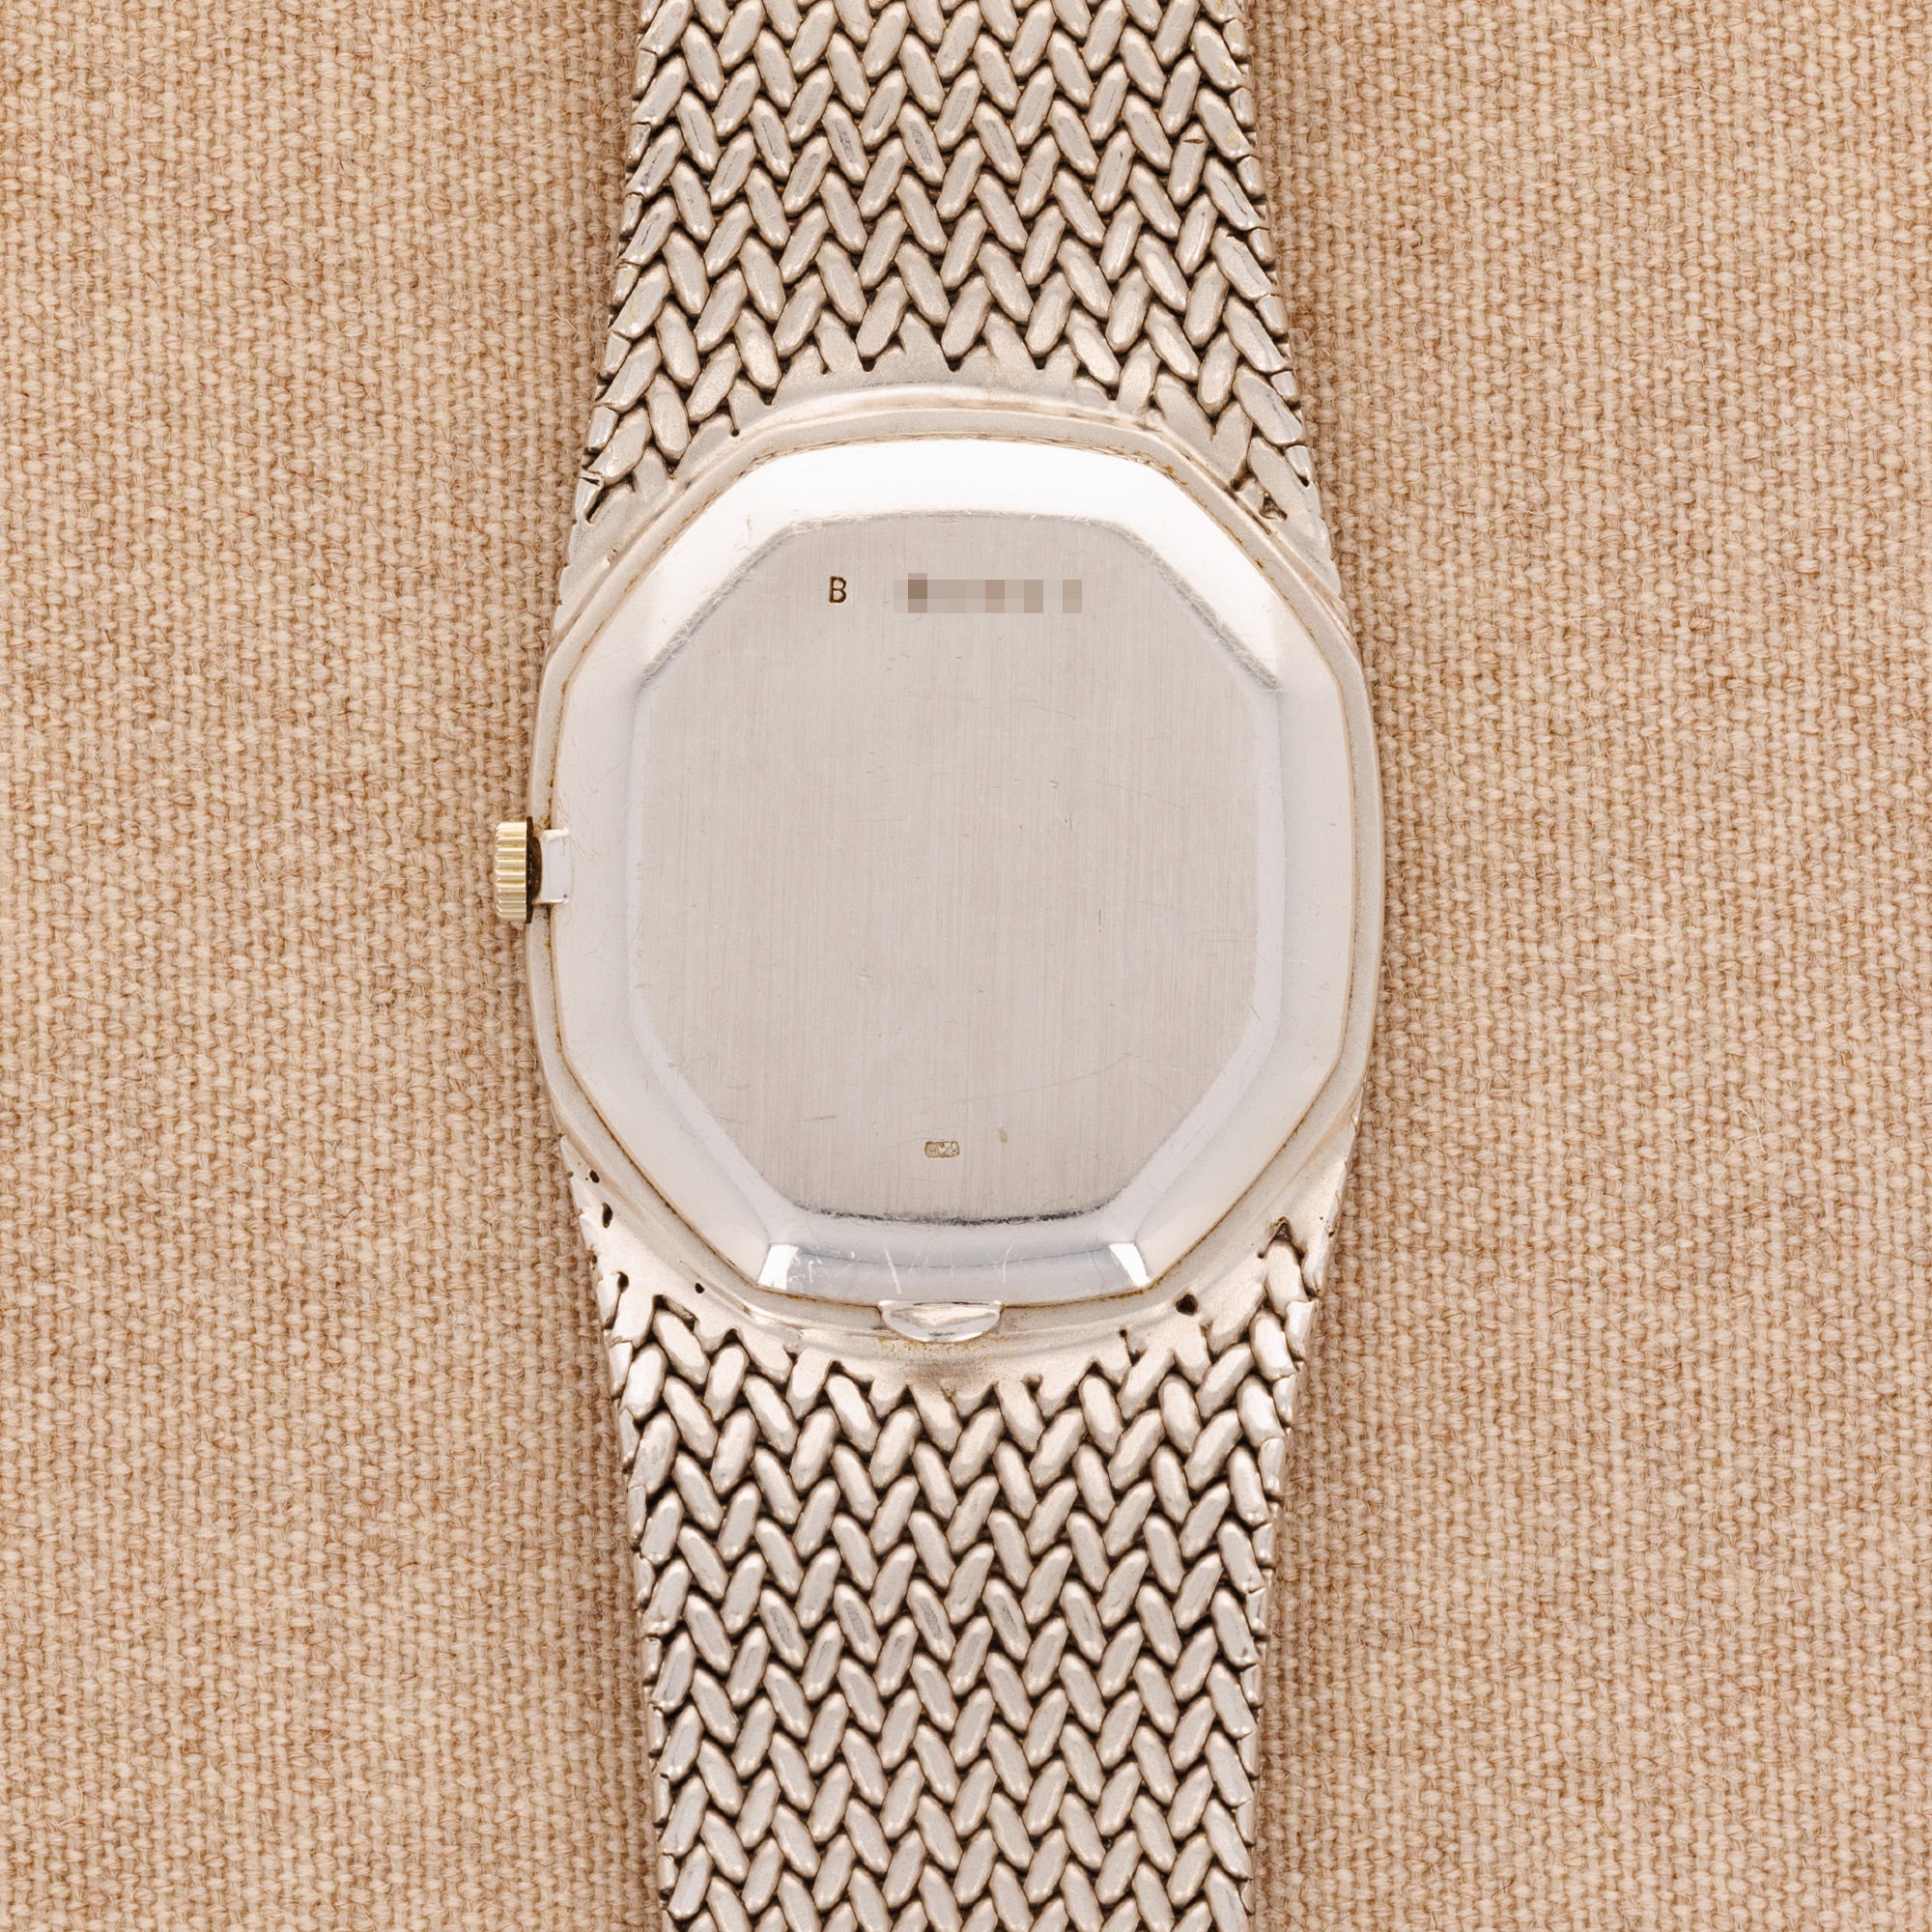 Audemars Piguet - Audemars Piguet White Gold Cobra Watch - The Keystone Watches